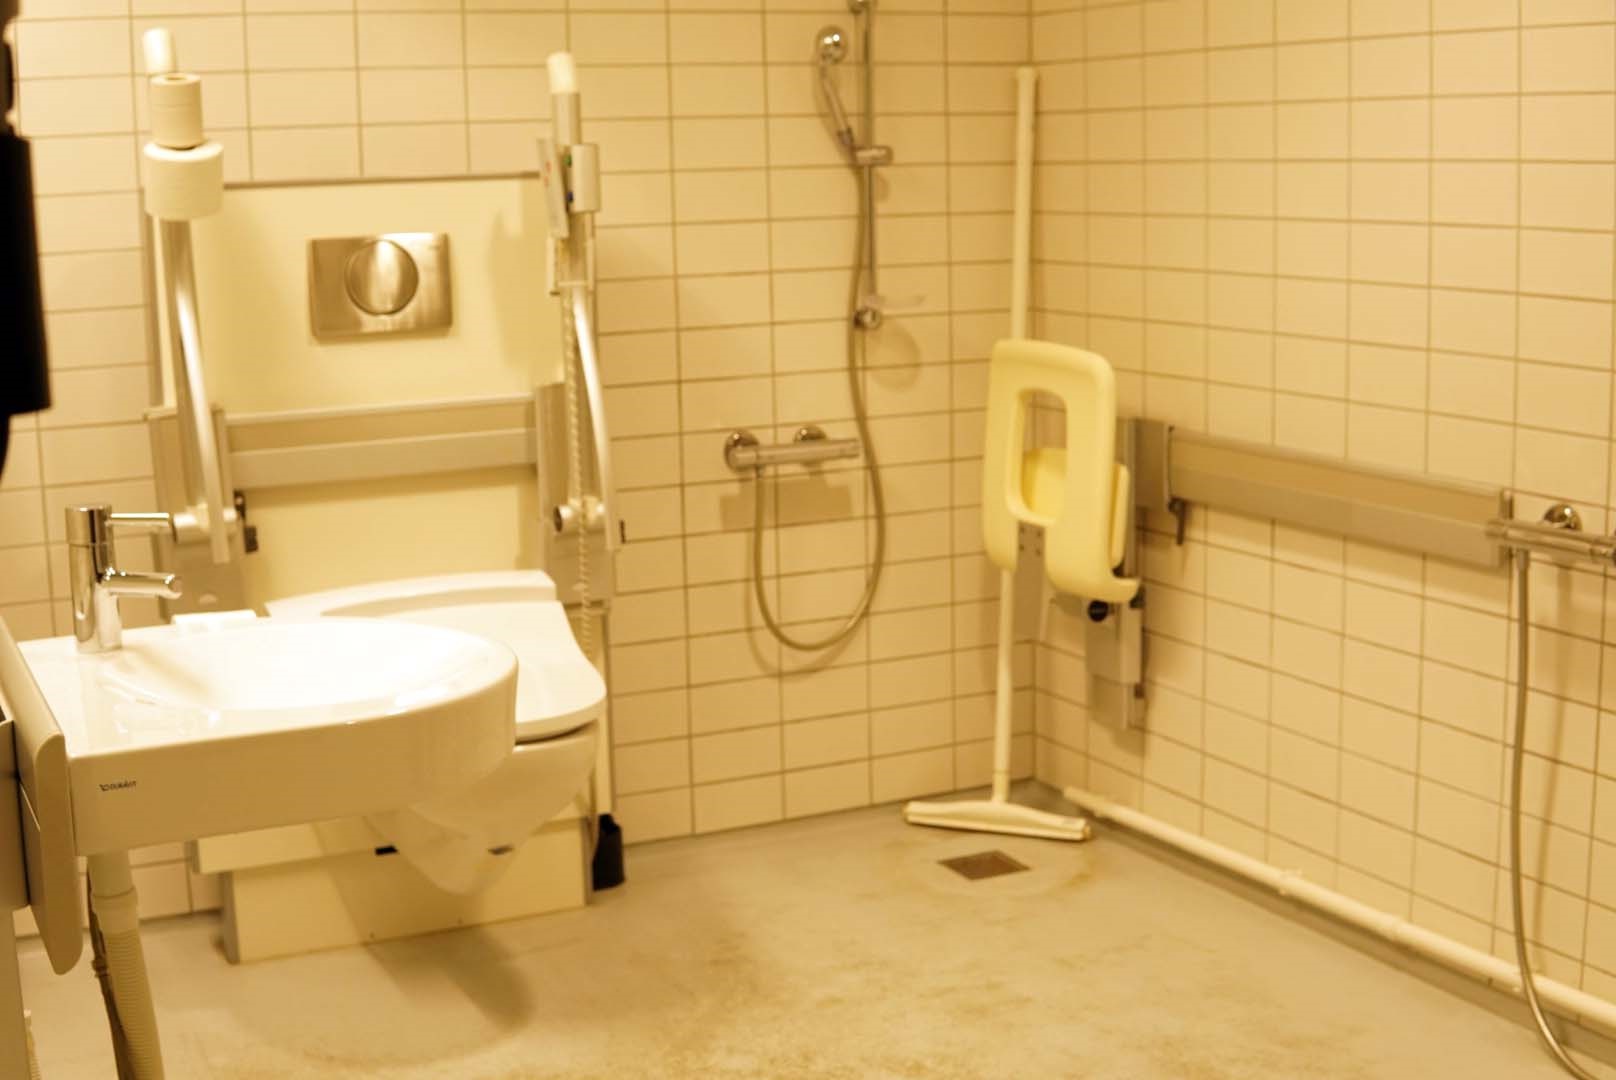 덴마크 최대 장애인 단체인 DPOD 내부 화장실 전경.